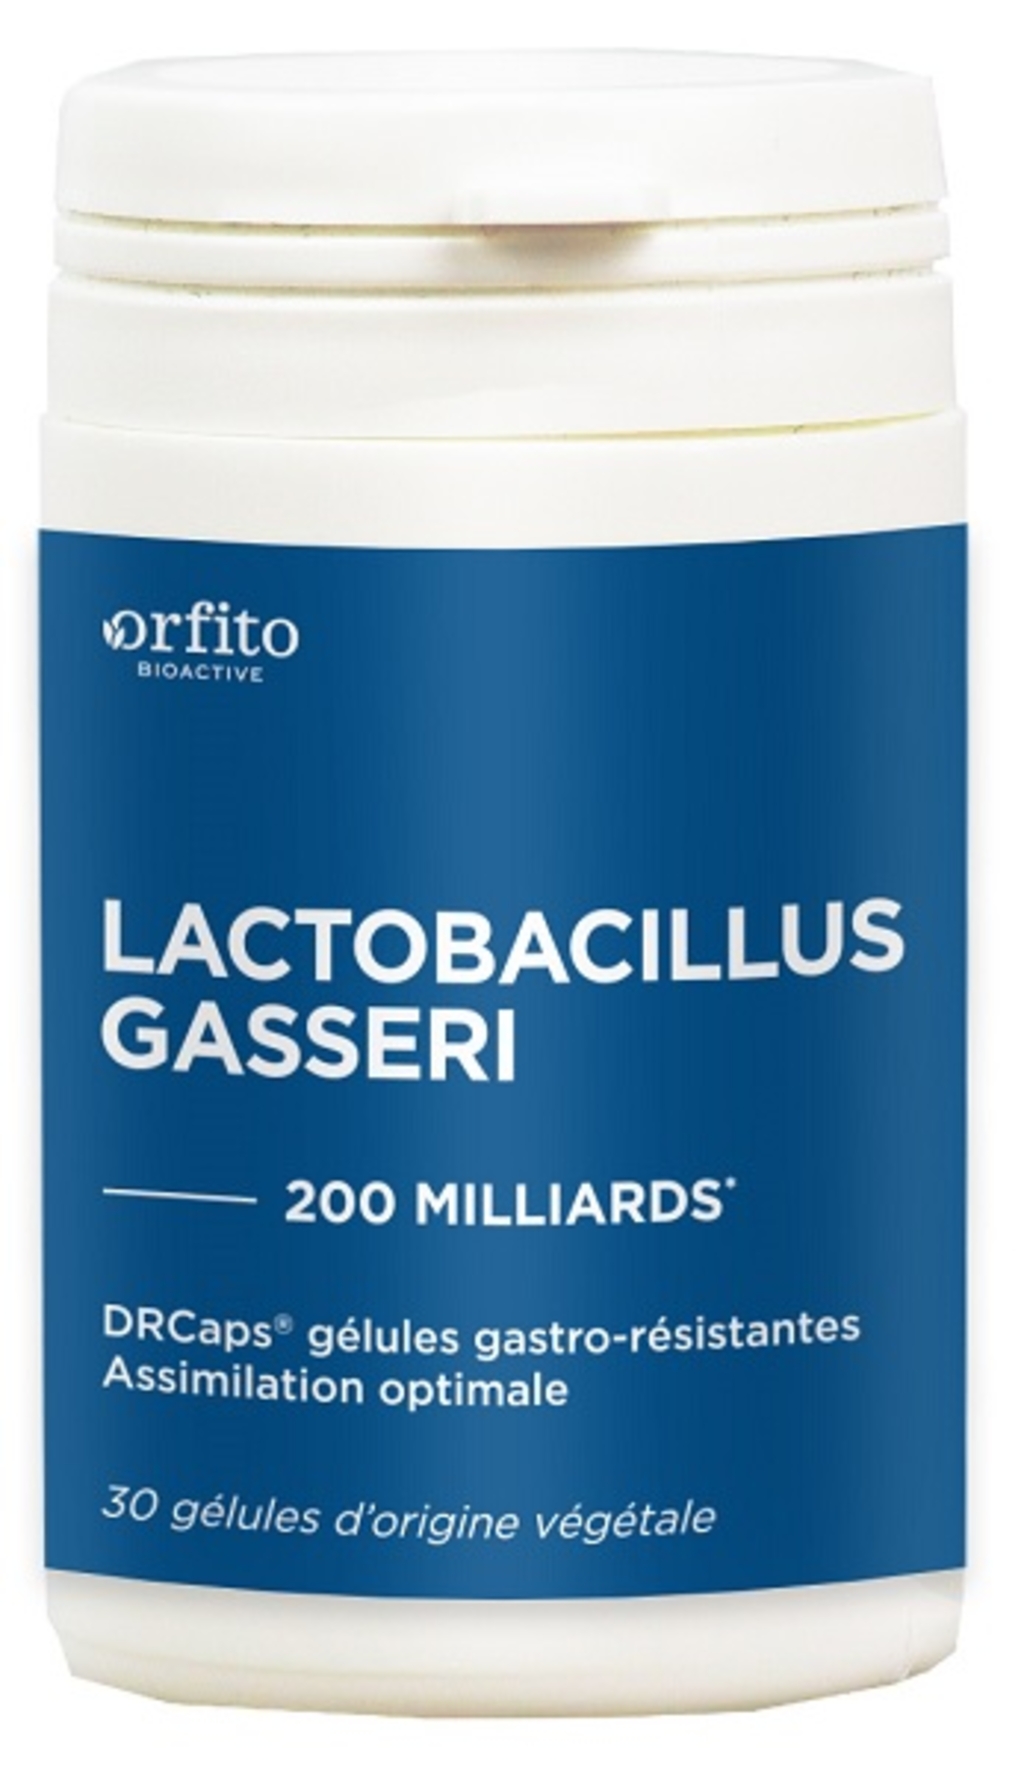 Lactobacillus Gasseri 200 milliards